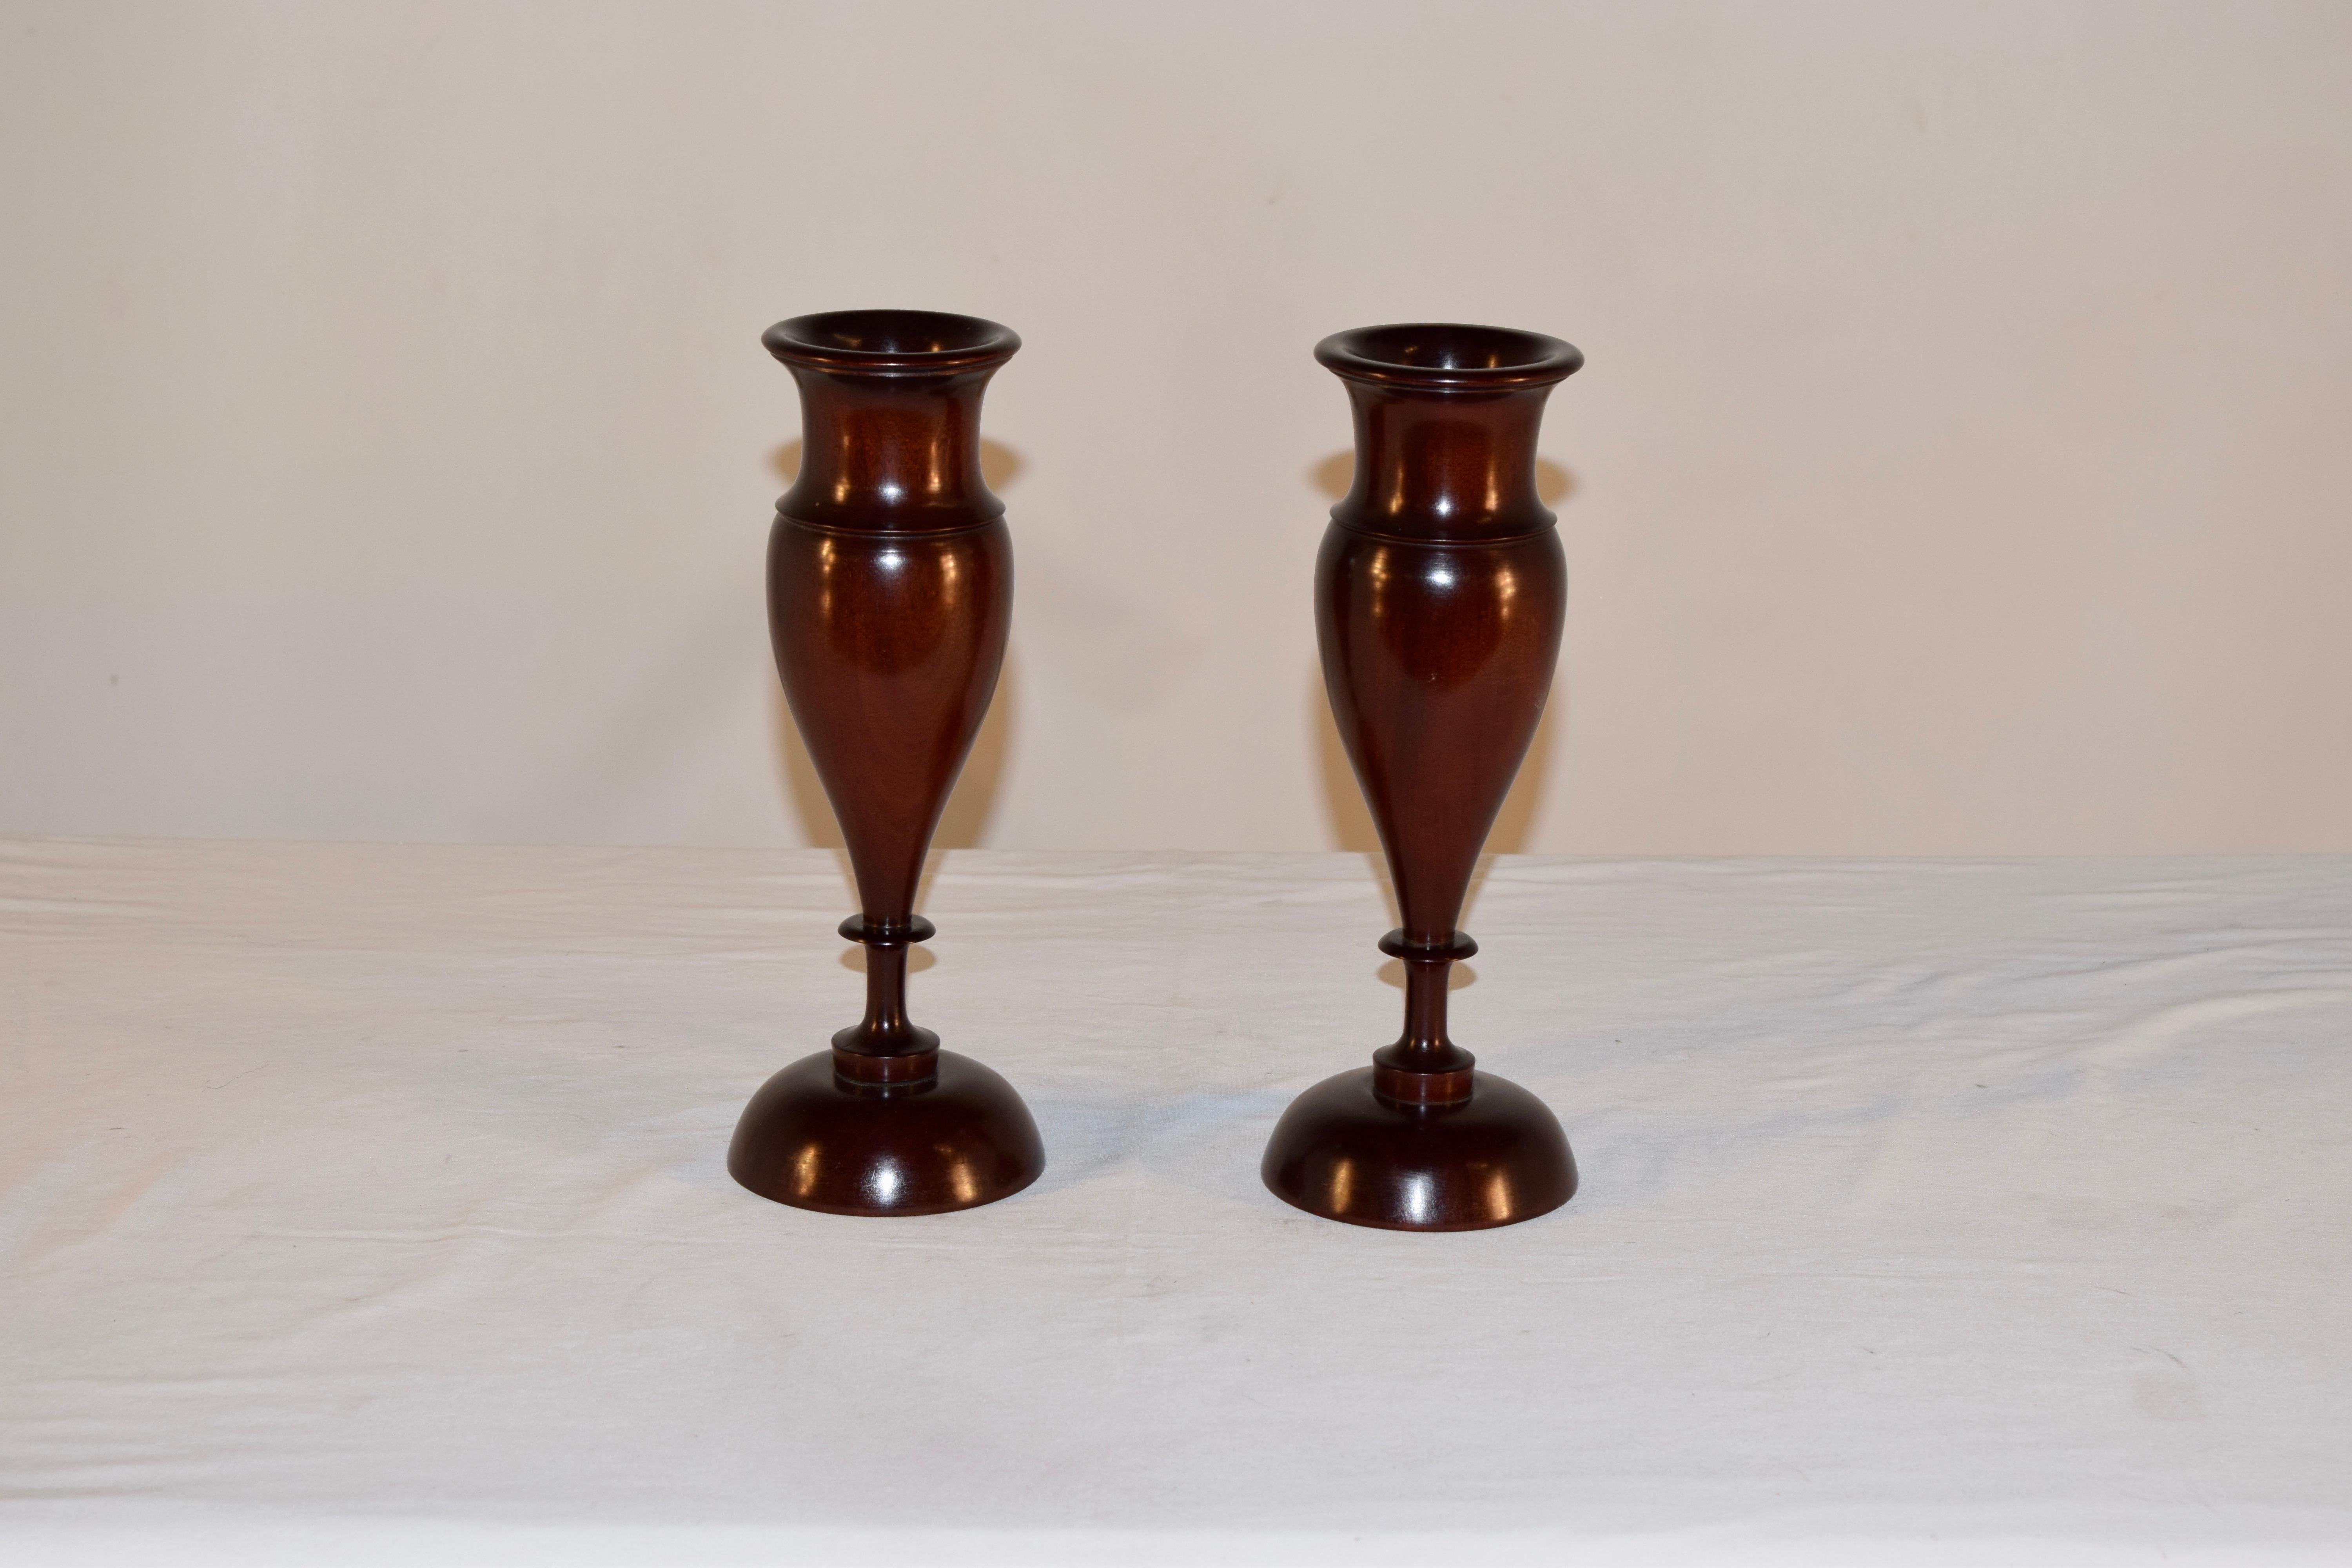 Paar Vasen aus Lignum vitae aus England um 1900. Sie sind kunstvoll von Hand gedreht und haben eine wunderbare Form. Die gedrehten Ränder gehen in geformte Kragen und bauchige Sockel über, die auf handgedrehten Kuppelsockeln ruhen.